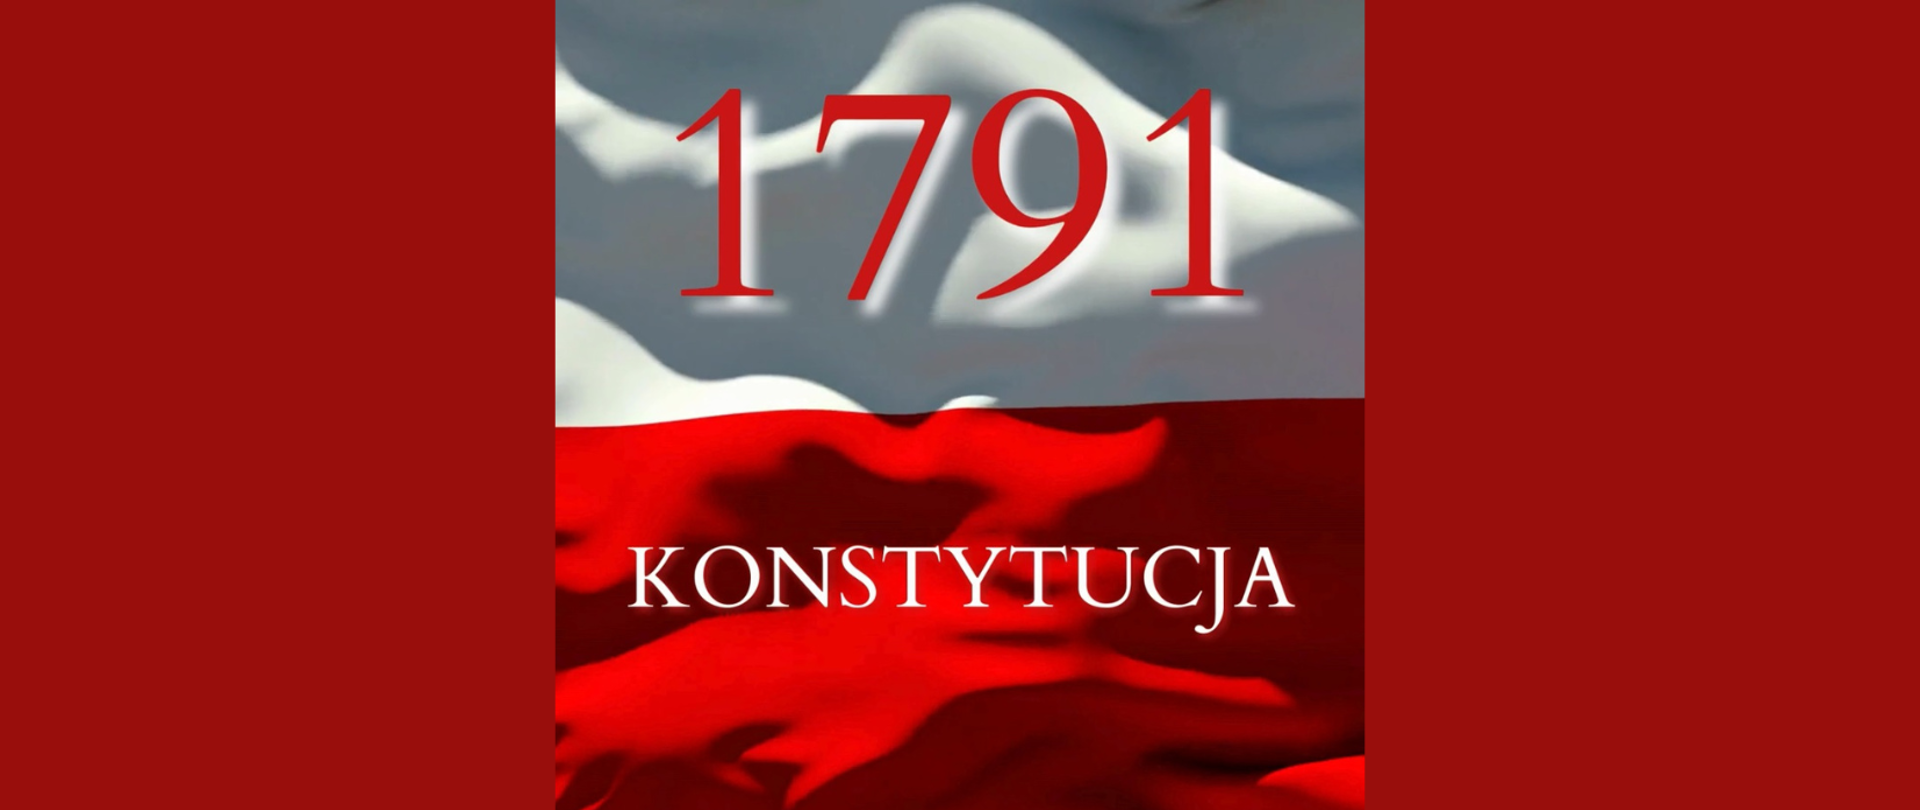 Napis - 1791 Konstytucja - na tle z barwami narodowymi Polski.